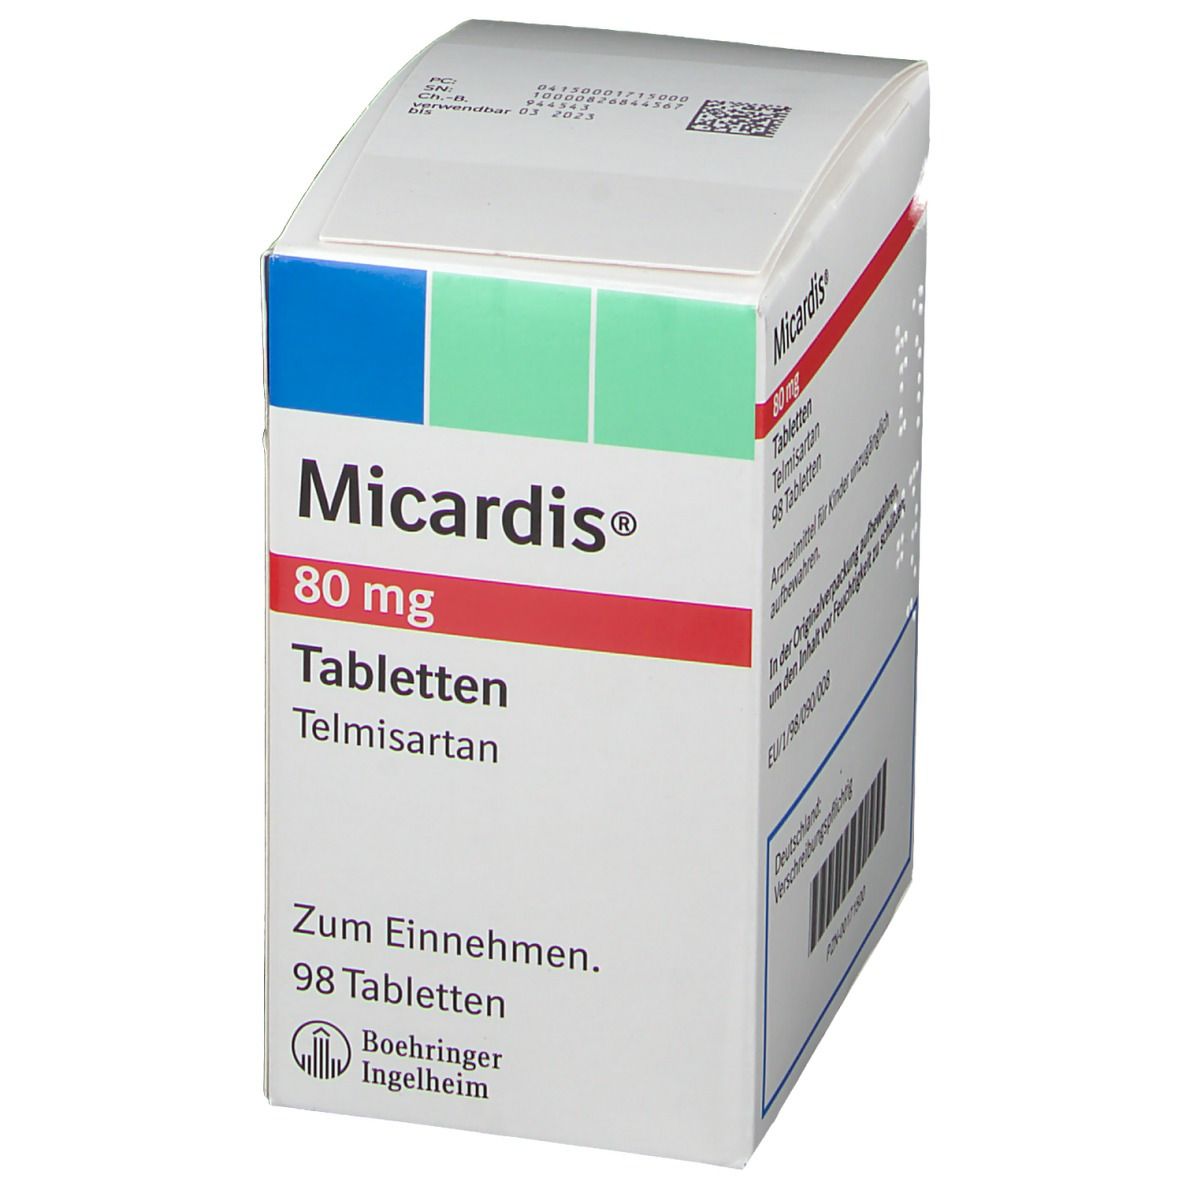 Micardis® 80 mg